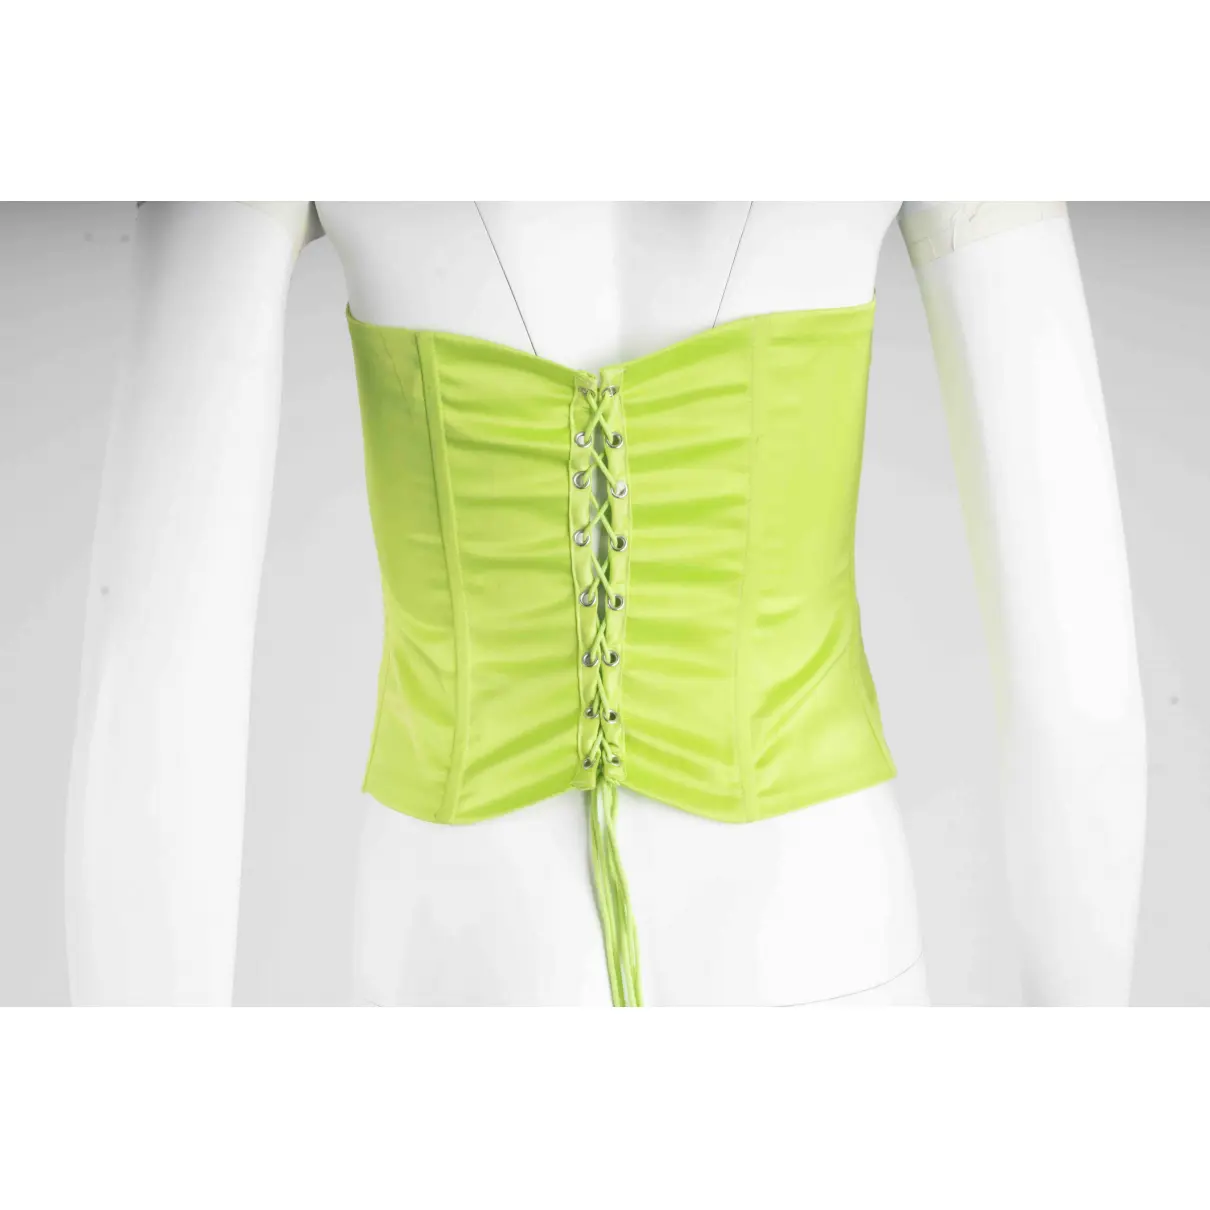 Buy Danielle Guizio Silk corset online